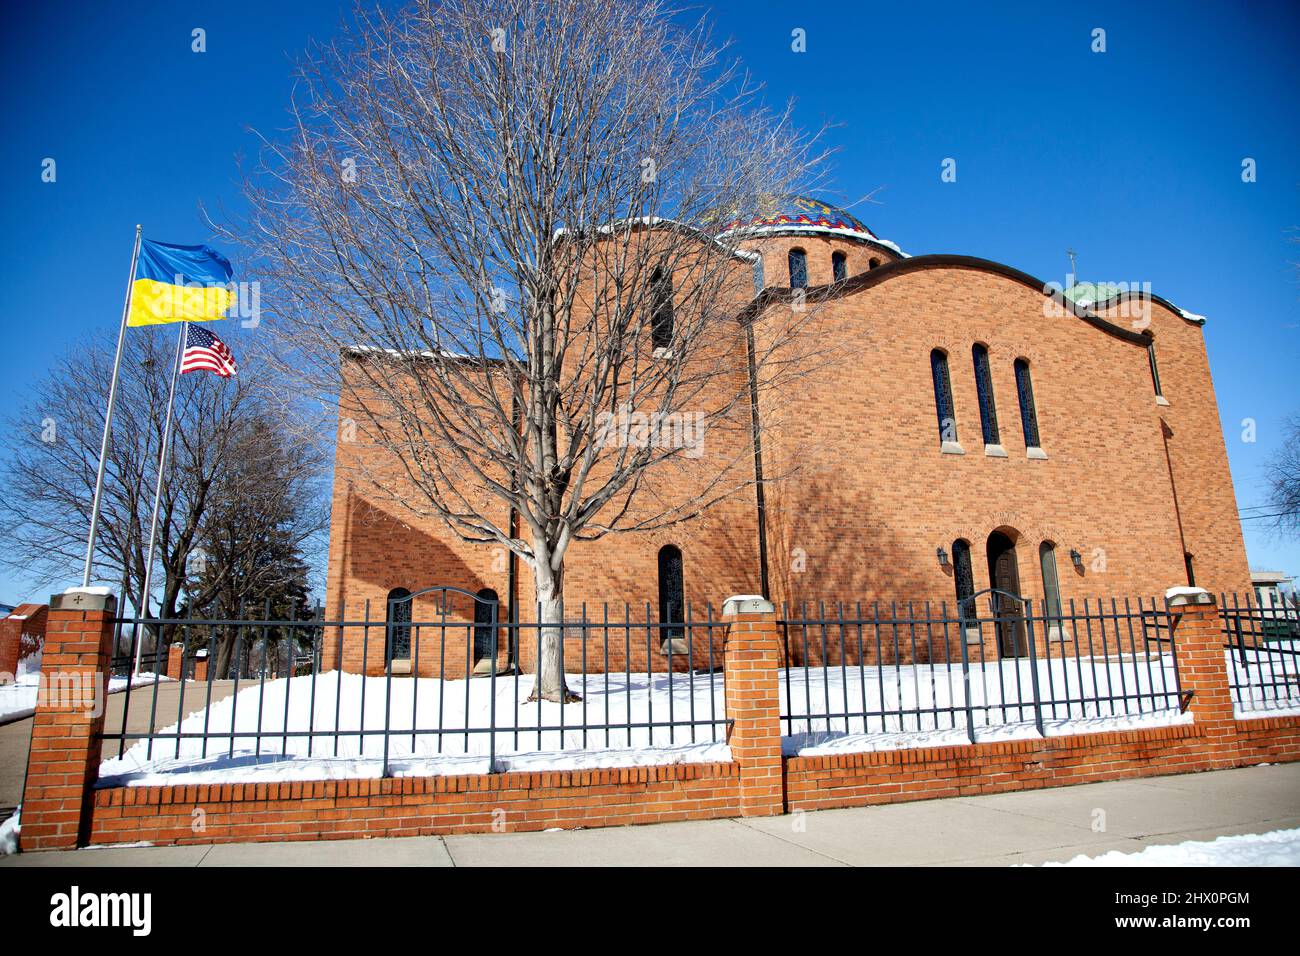 St. Constantine Ukrainische katholische Kirche mit sowohl der Ukraine und amerikanischen Flagge fliegen zusammen, die Unterstützung zeigt. Minneapolis Minnesota, USA Stockfoto